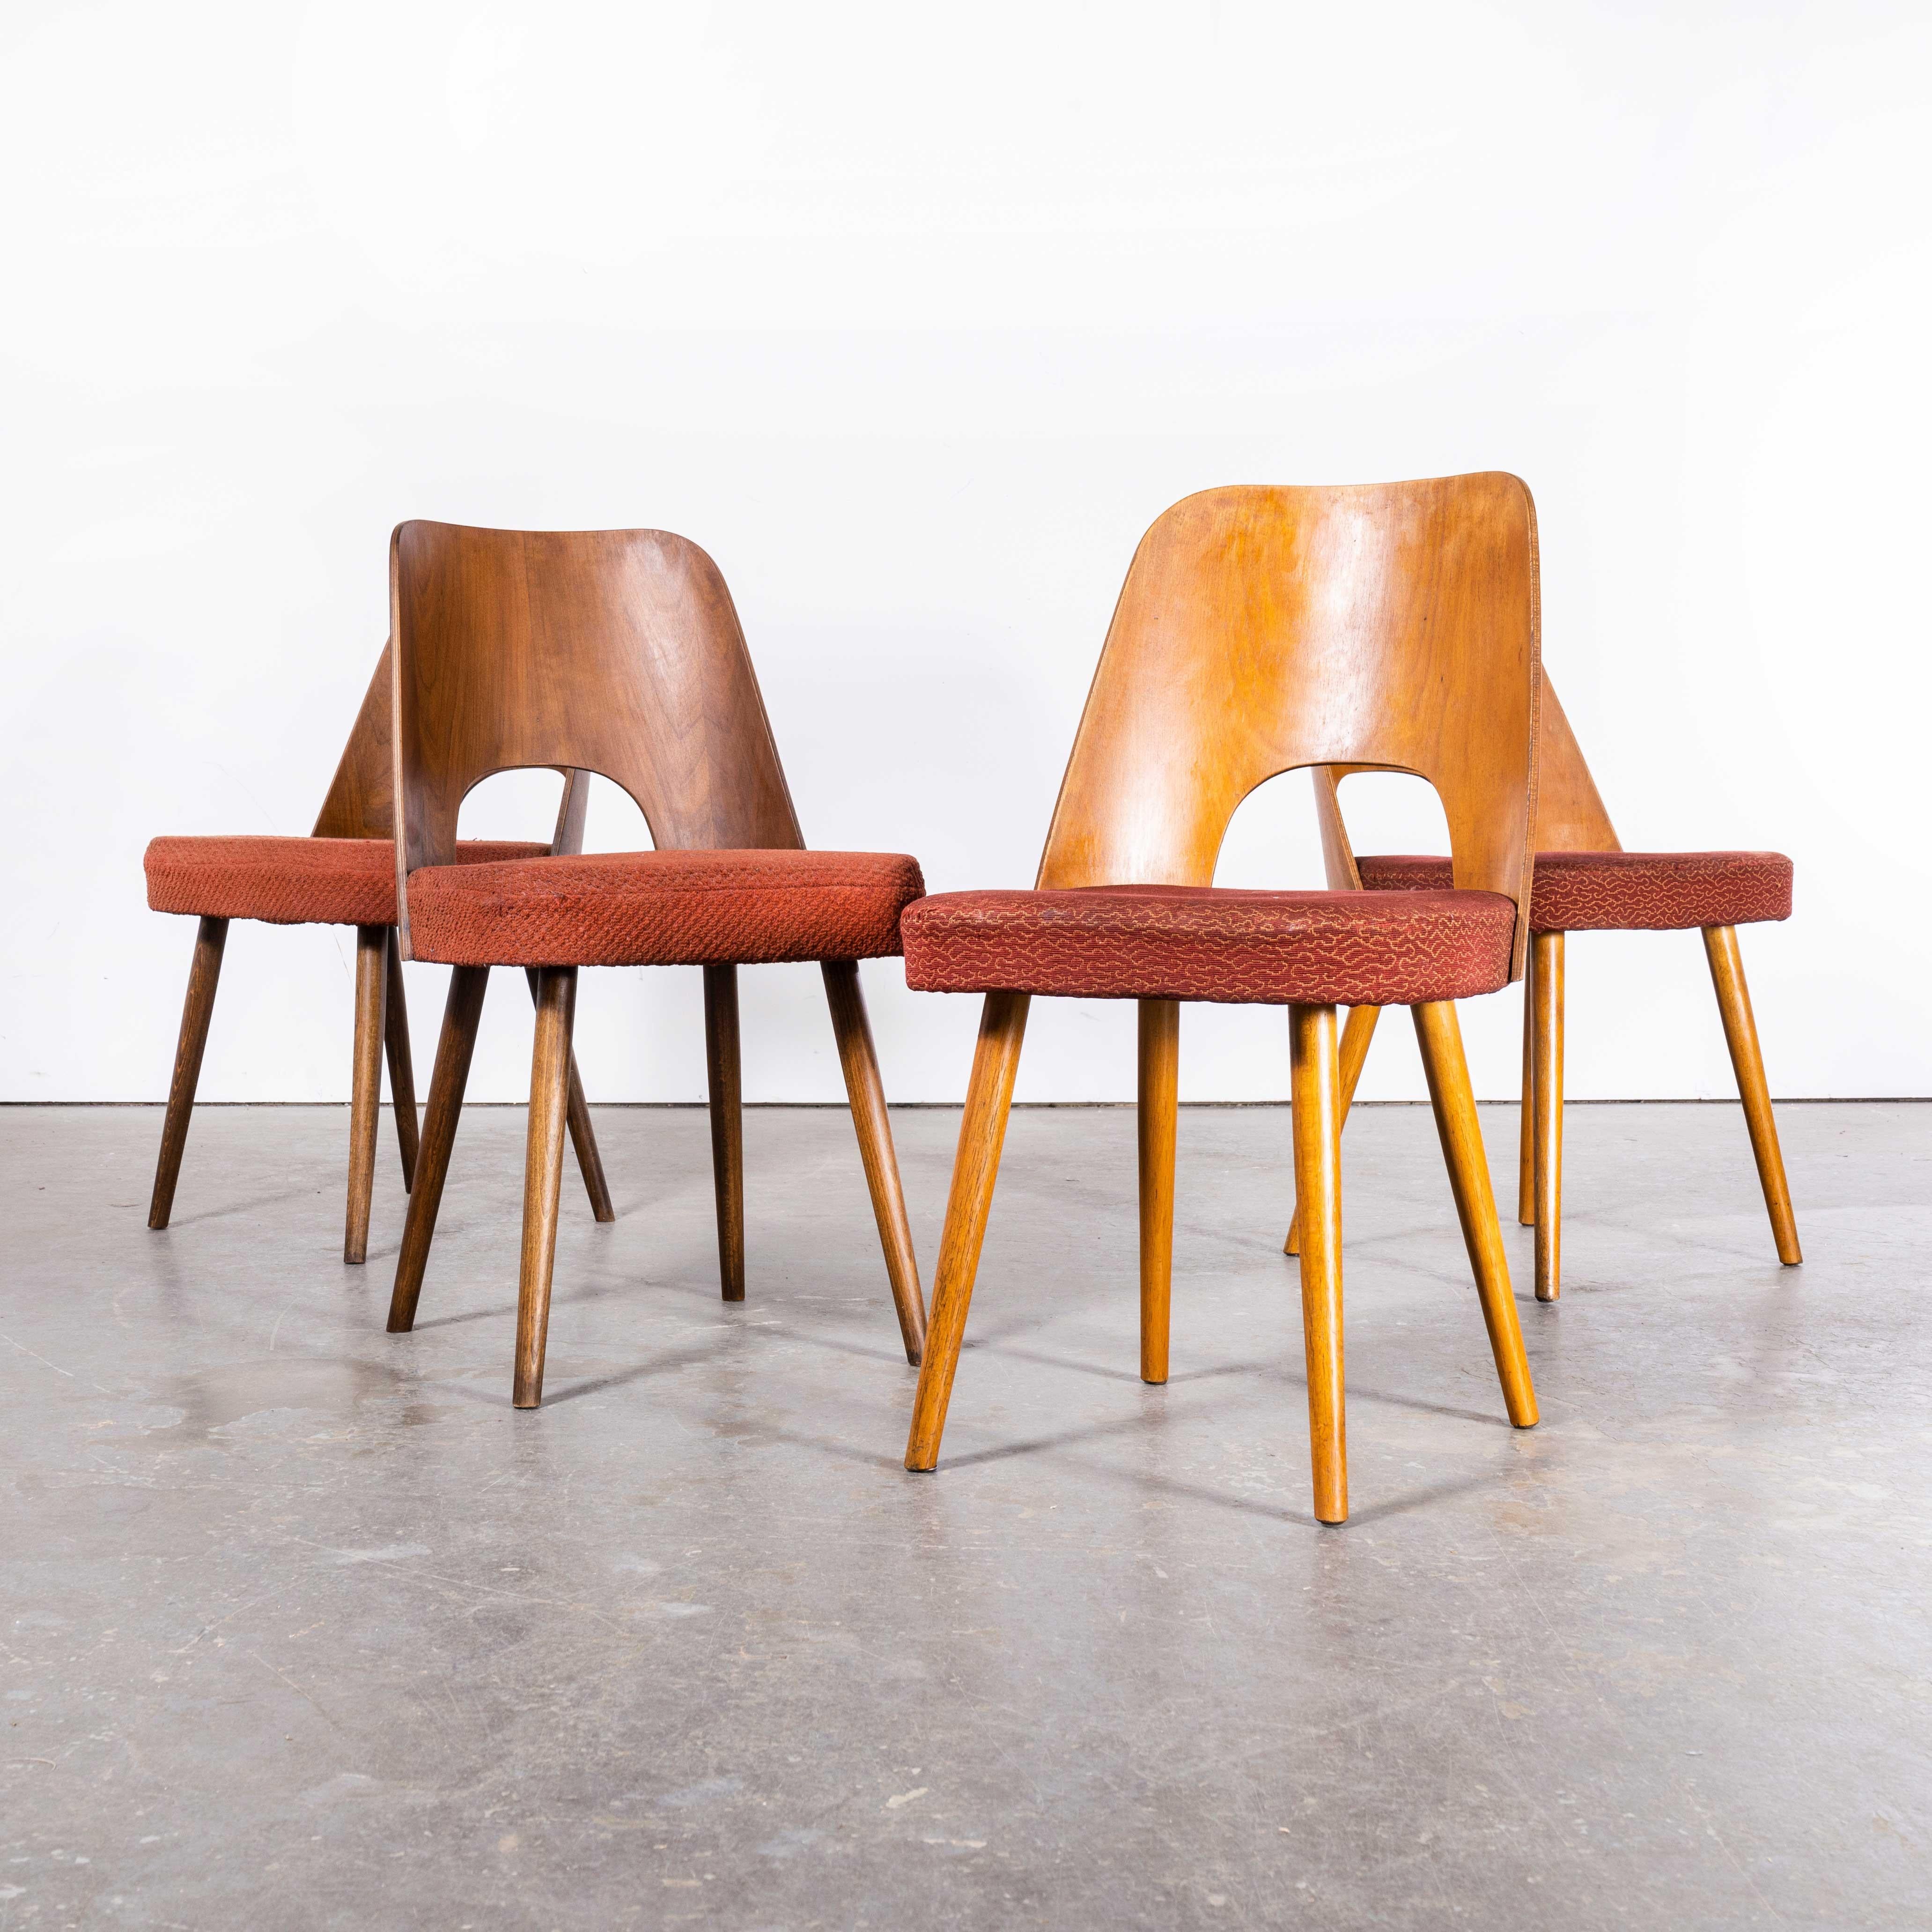 1960er Set von vier gepolsterten Esszimmerstühlen - Oswald Haerdtl (2349)
1960's Set von vier gepolsterten Esszimmerstühlen - Oswald Haerdtl. Diese Stühle wurden von der berühmten tschechischen Firma Ton hergestellt, die auch heute noch tätig ist